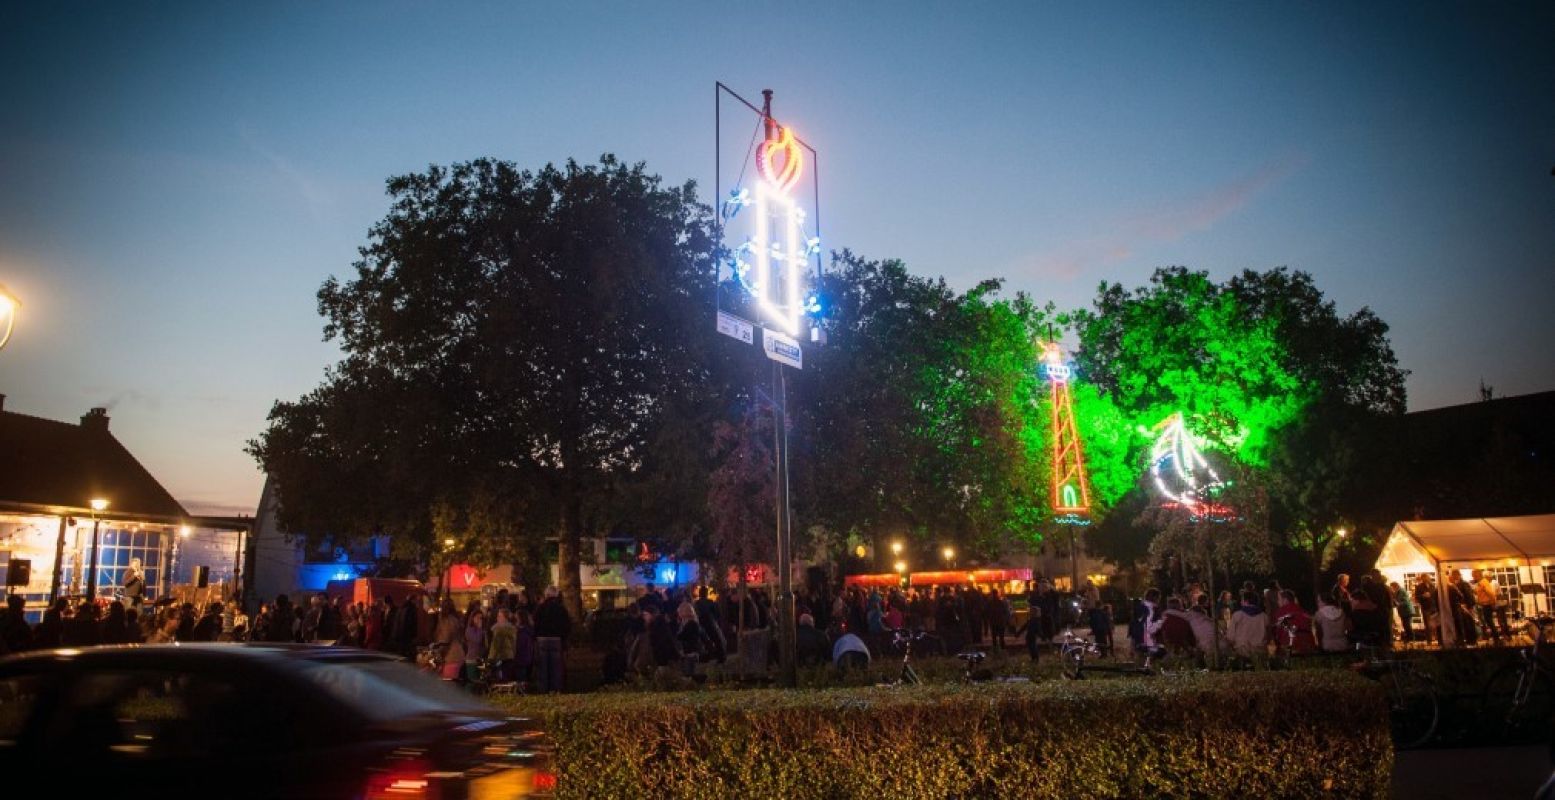 De Lichtjesroute in Eindhoven is ieder jaar weer een groot spektakel. Foto: Johan Plateijn.